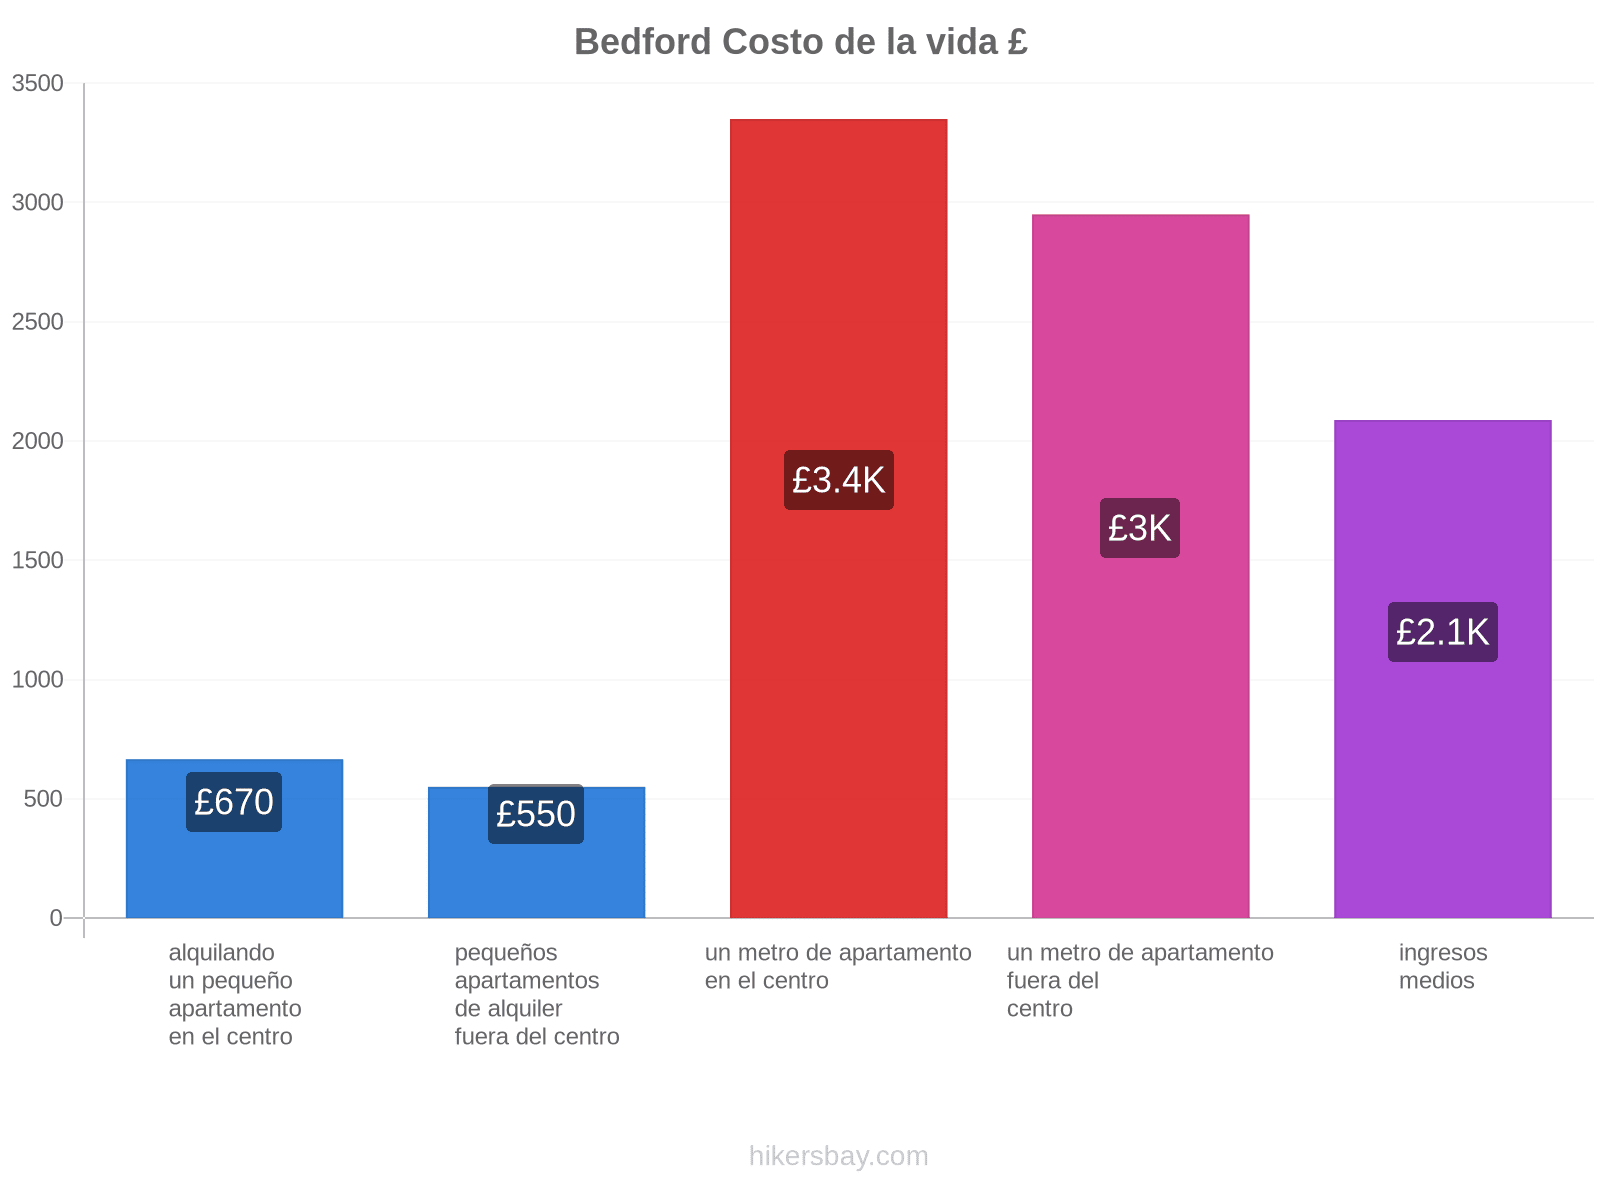 Bedford costo de la vida hikersbay.com